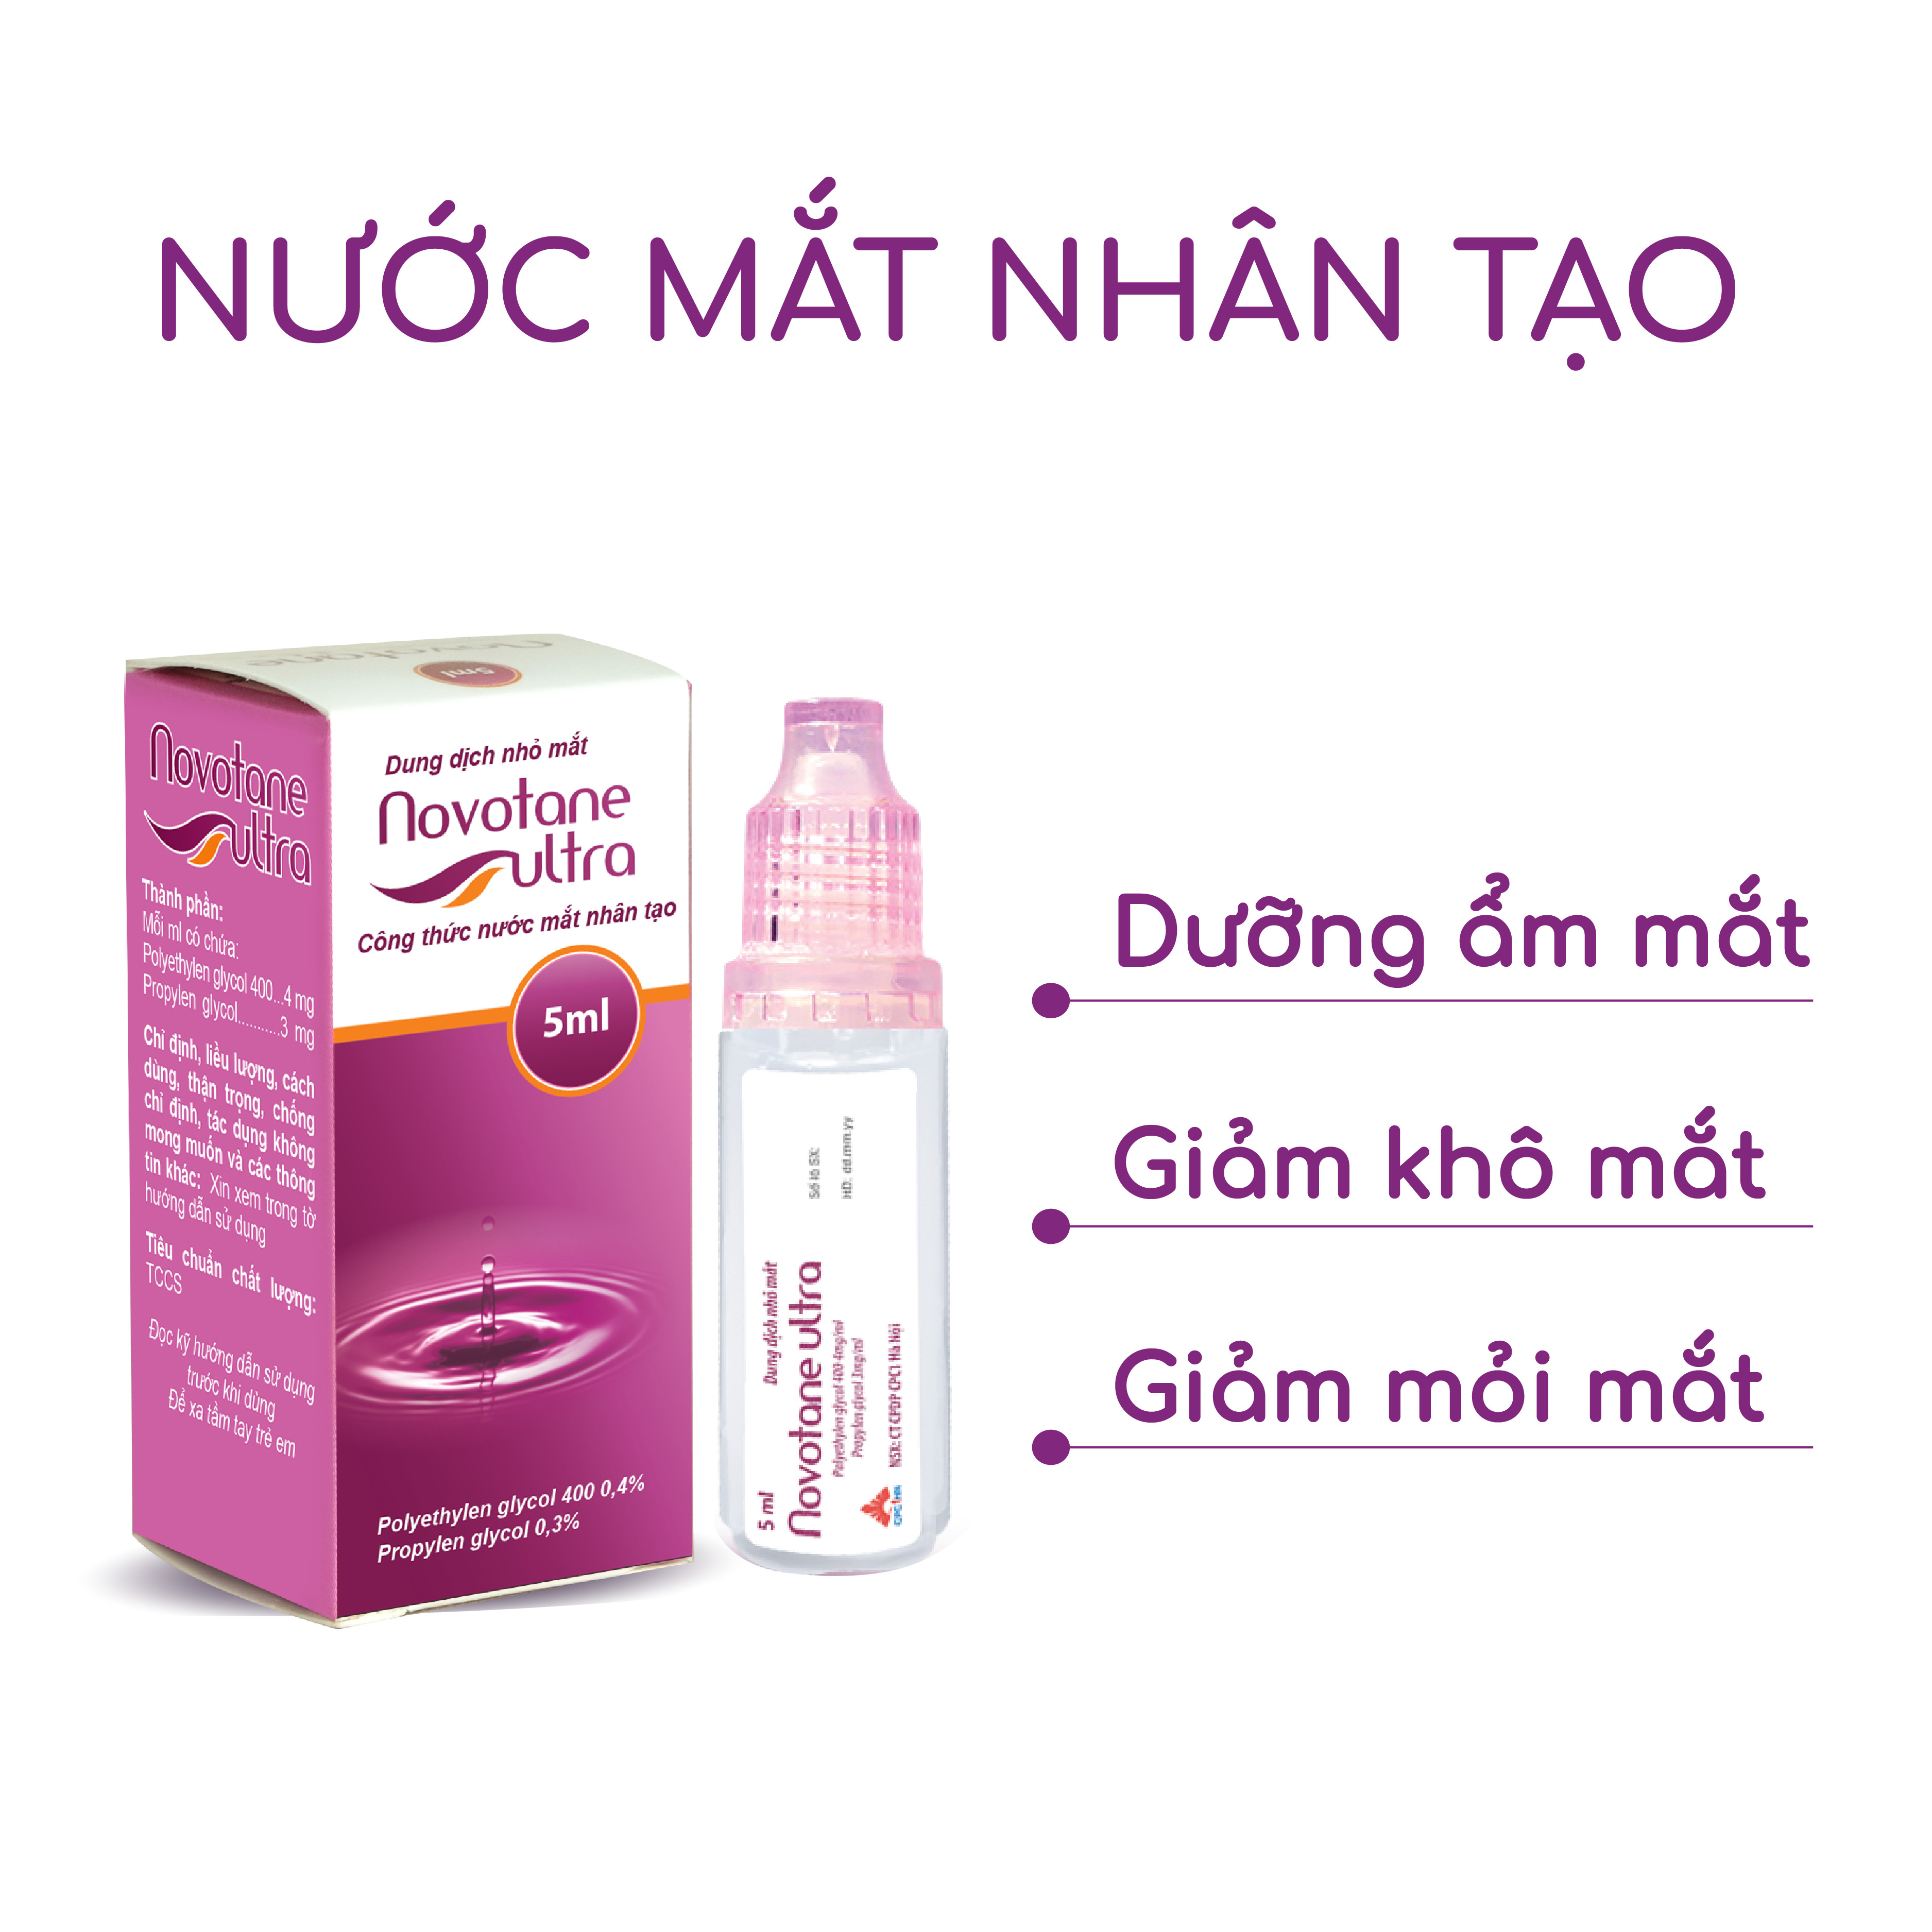 Combo 2 lọ Nước mắt nhân tạo Novotane Ultra 5ml giúp bảo vệ mắt, dưỡng ẩm, giảm khô, giảm mỏi mắt